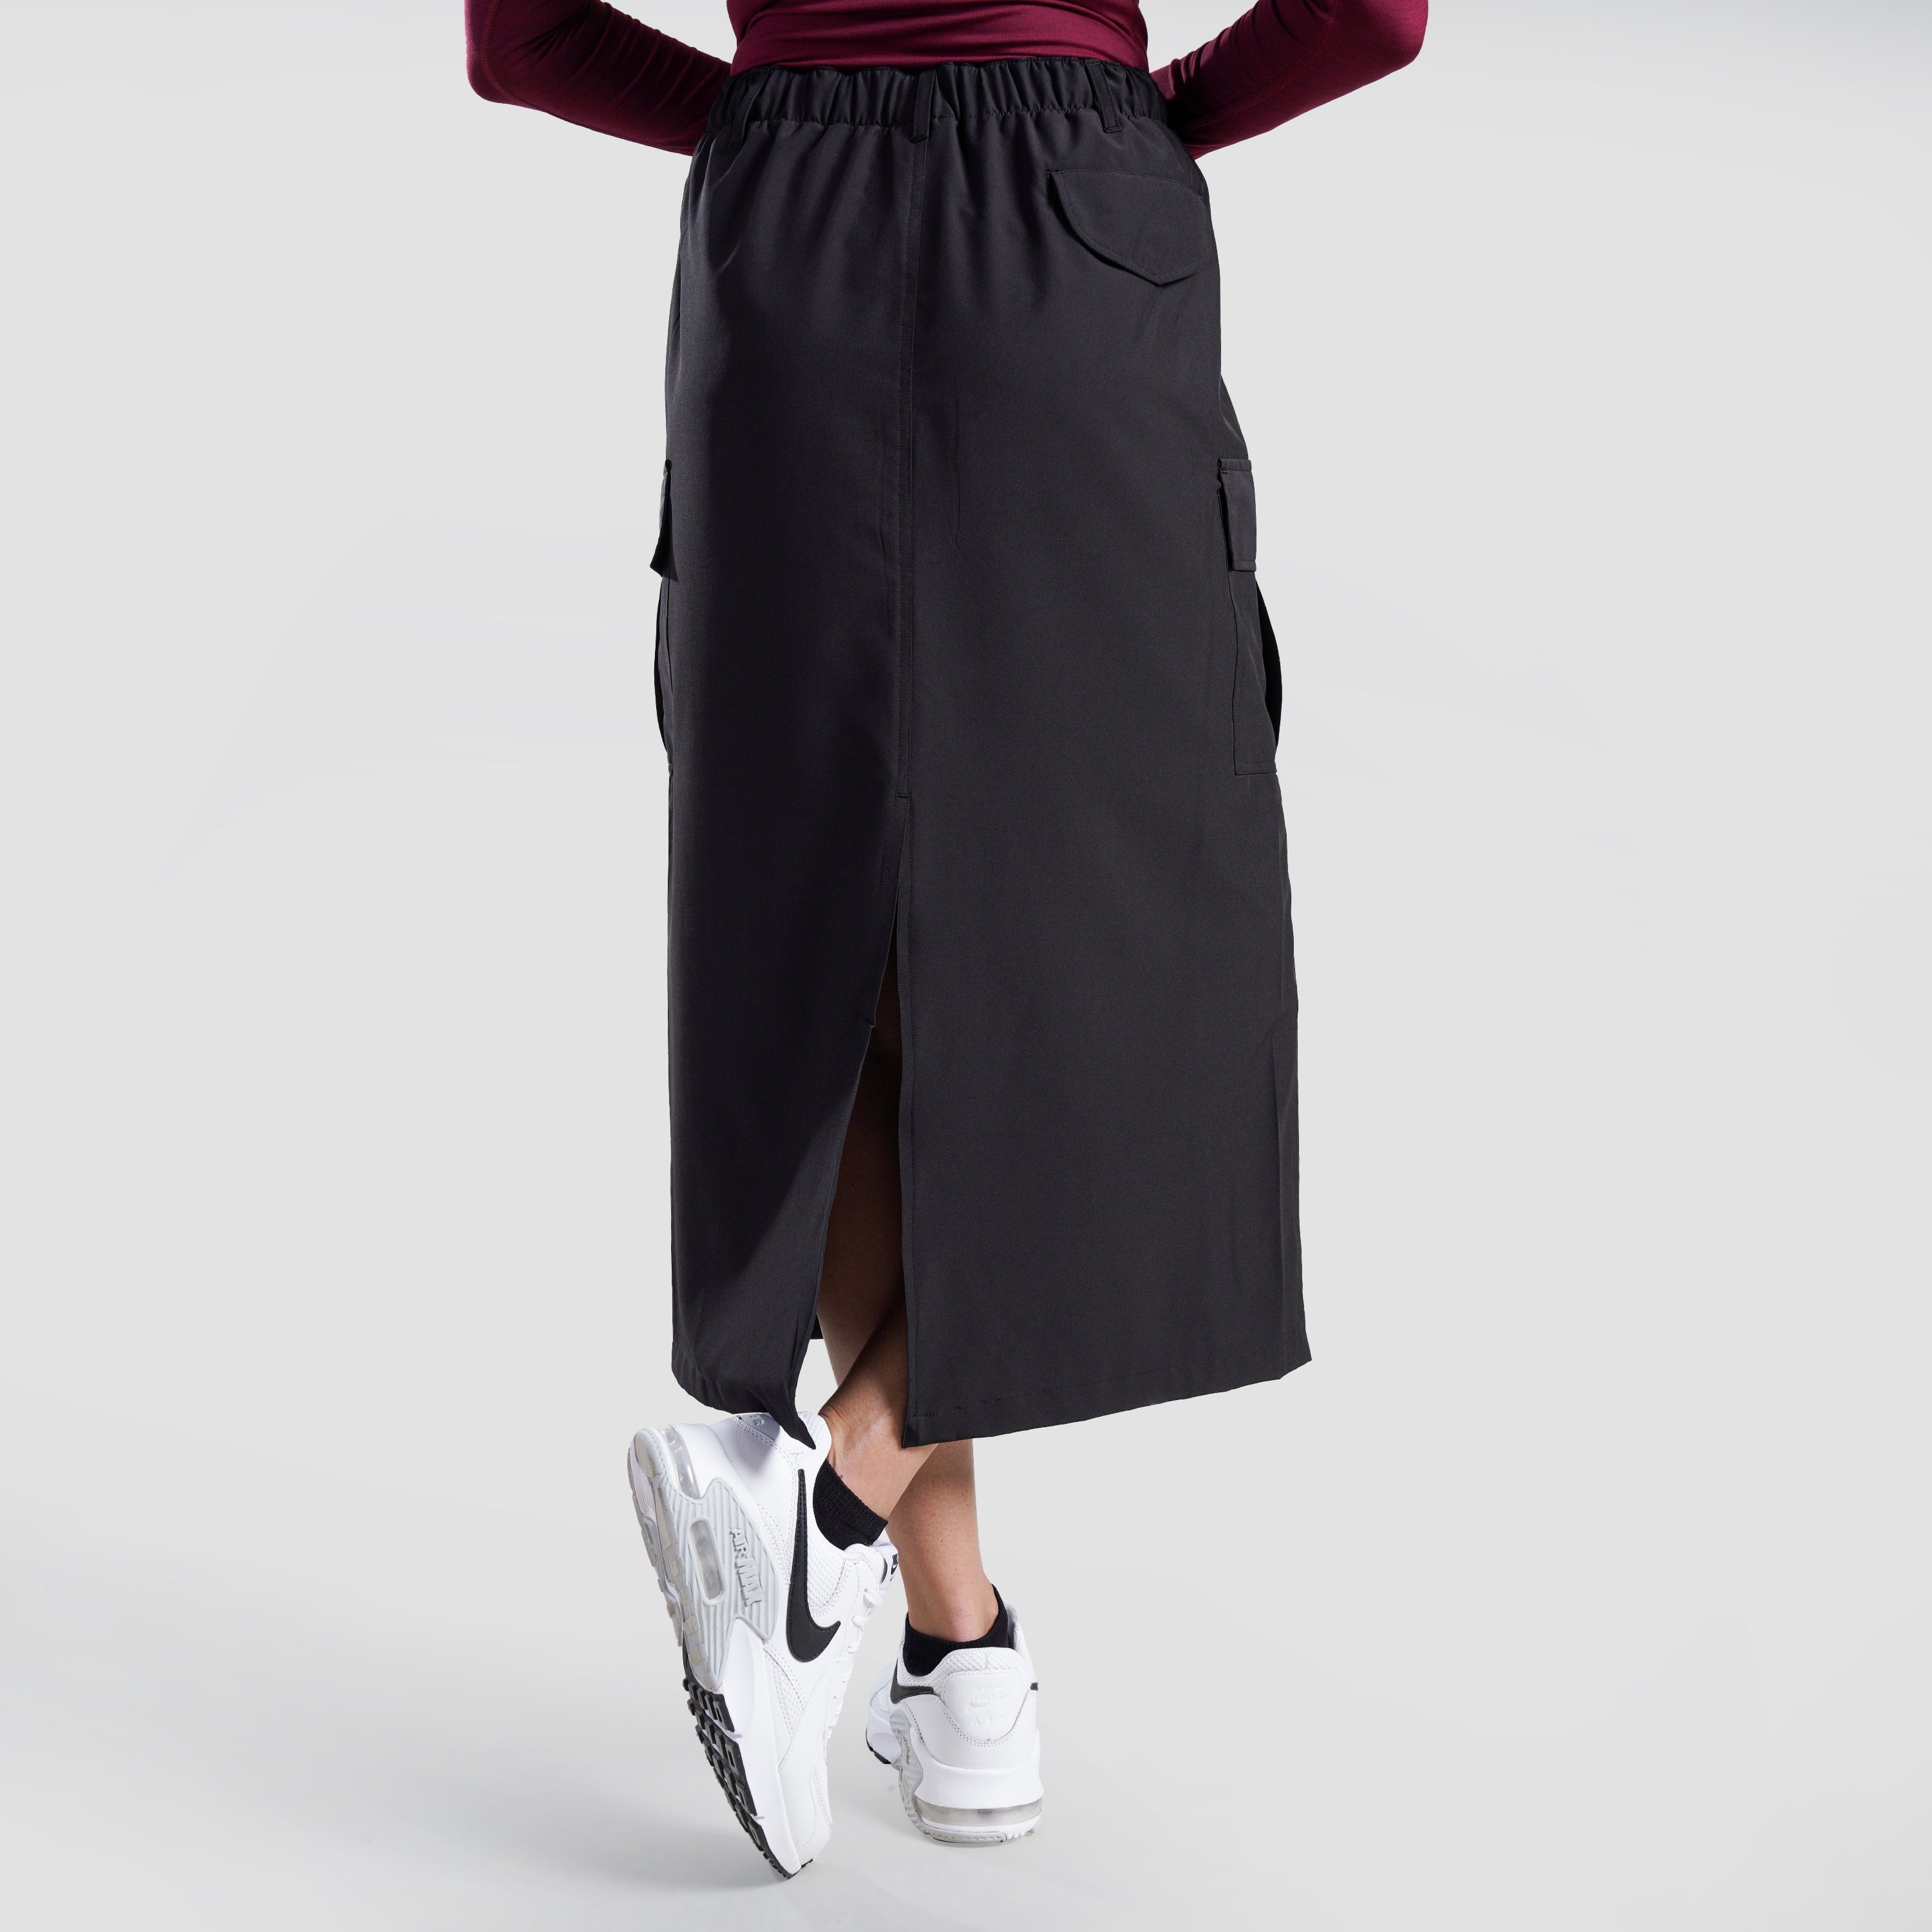 Active Grace Skirt (Black)